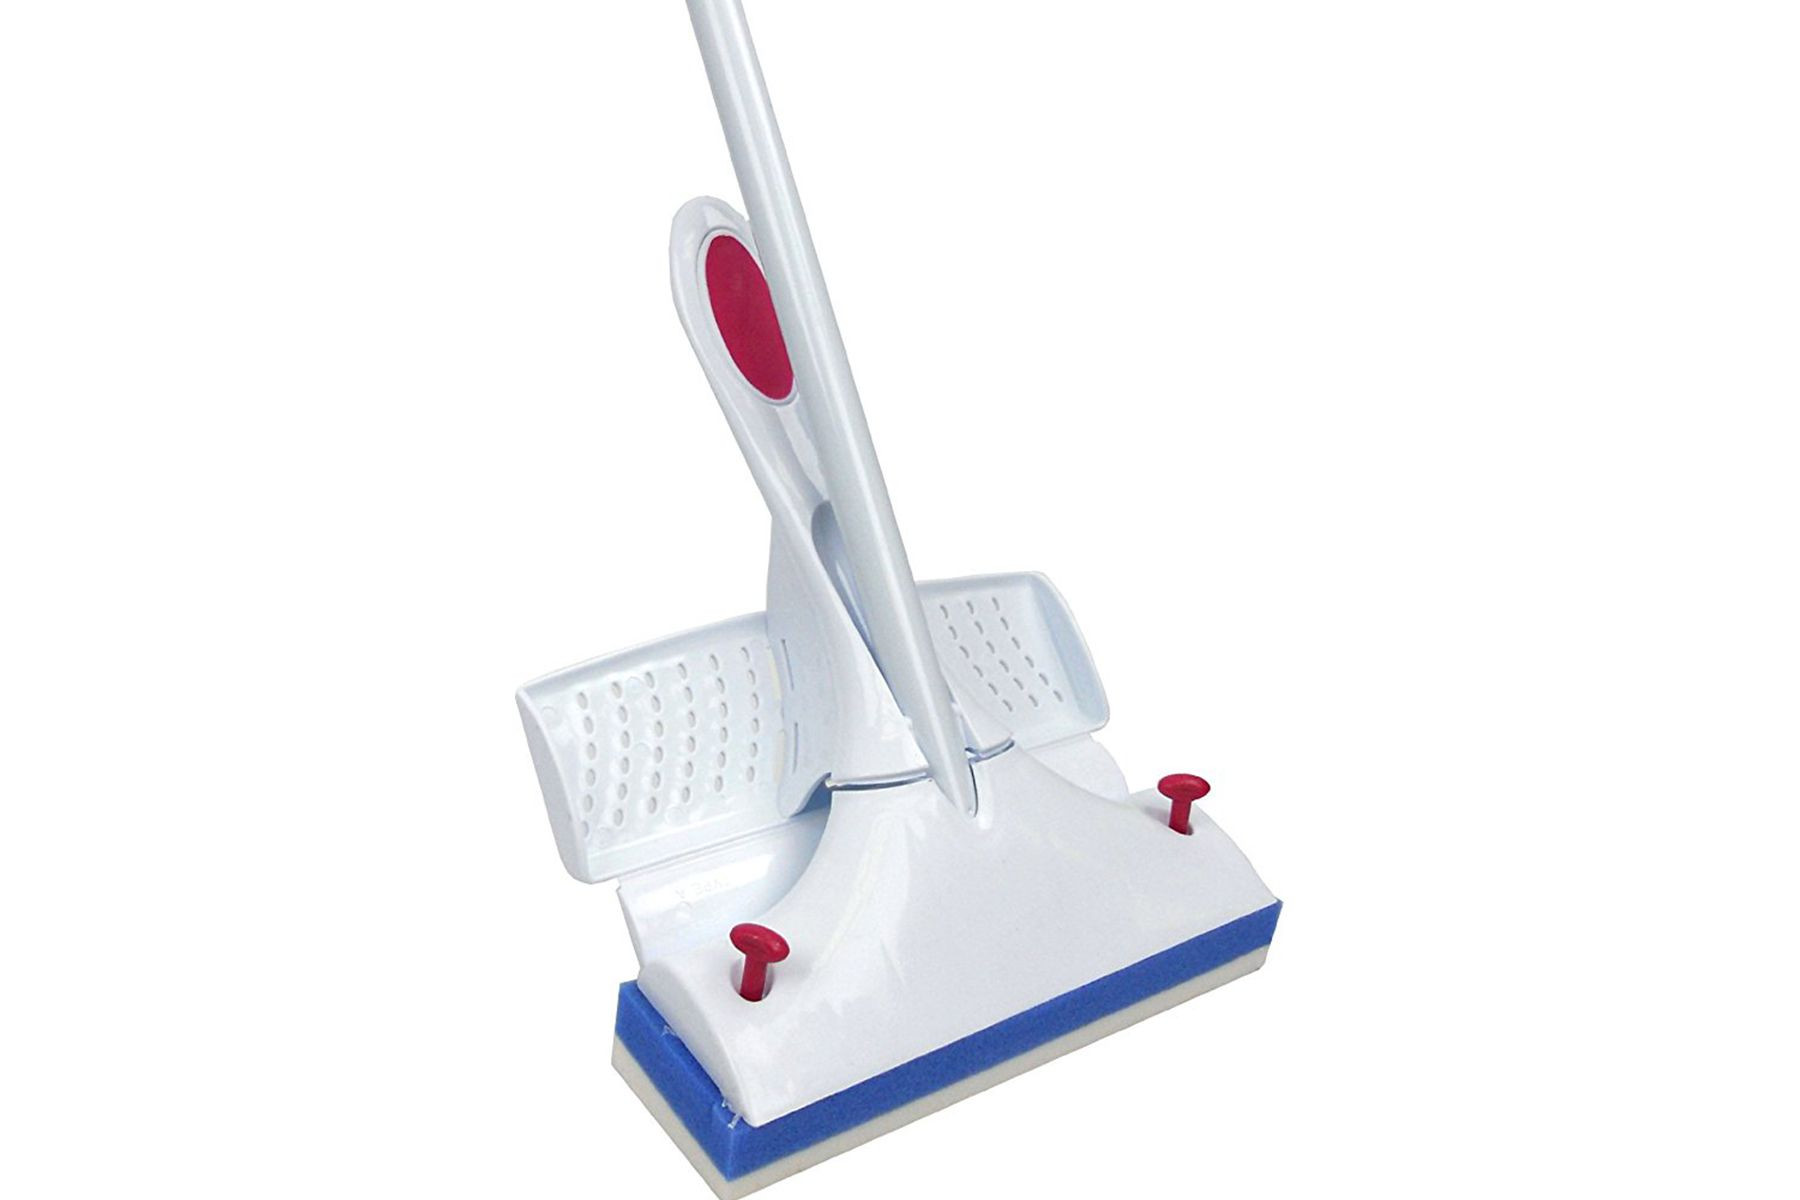 amazon hardwood floor mop of best sponge mops for your home in 2018 with mr clean magic eraser power squeeze mop